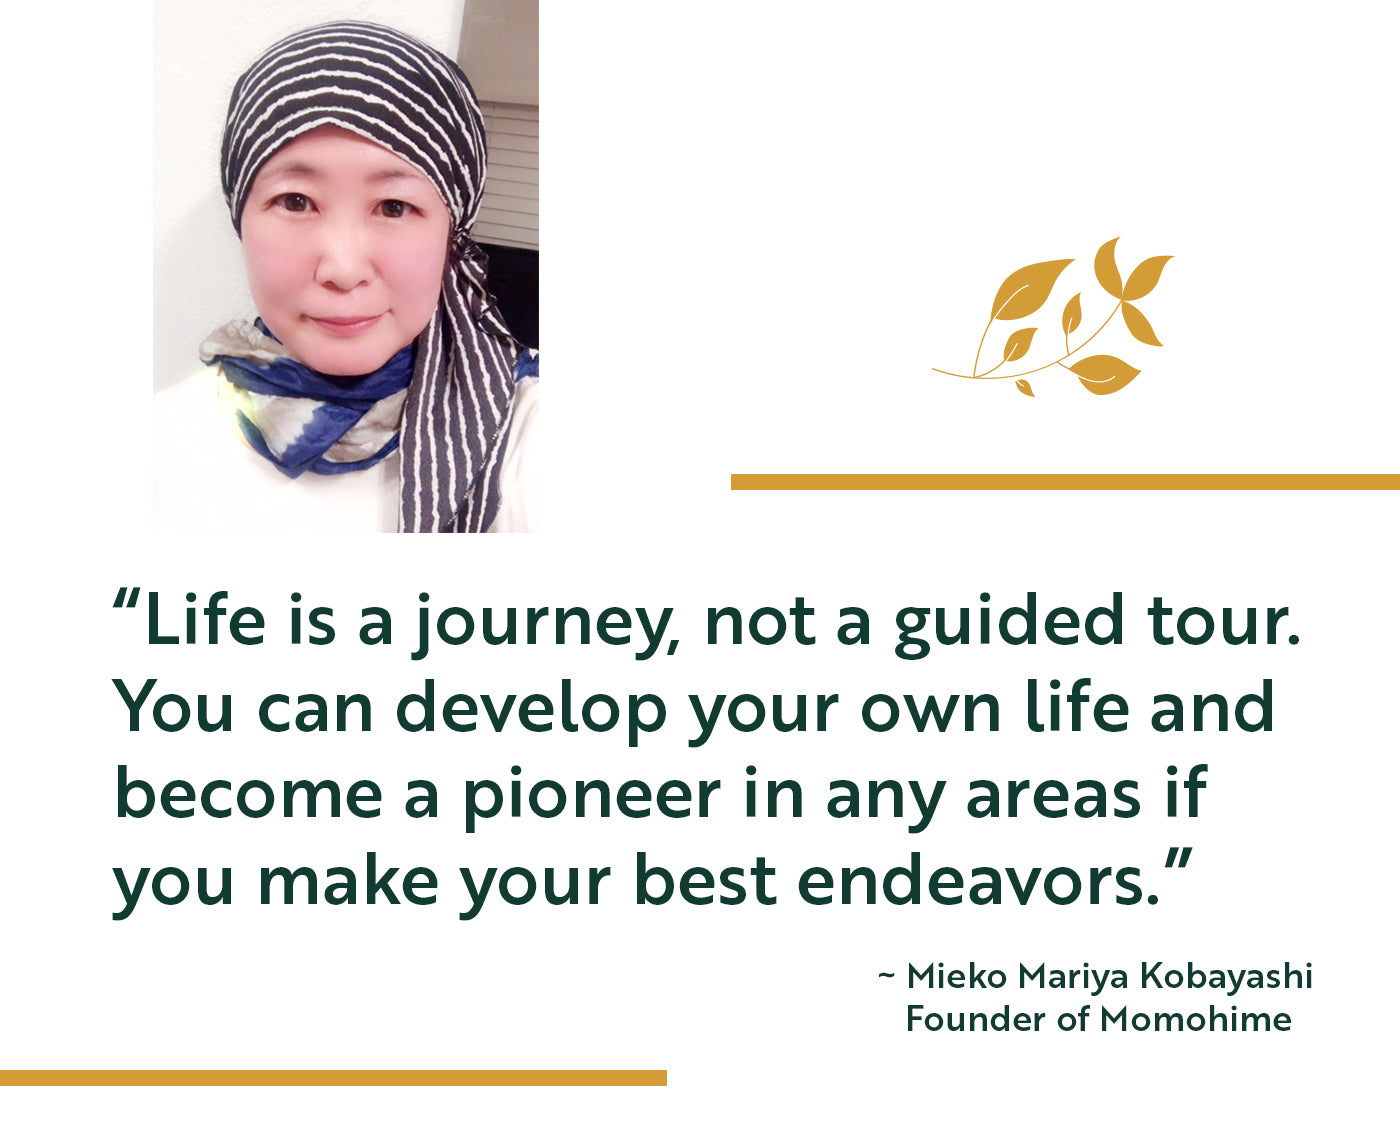 Mieko Mariya Kobayashi: A Life Changing Journey